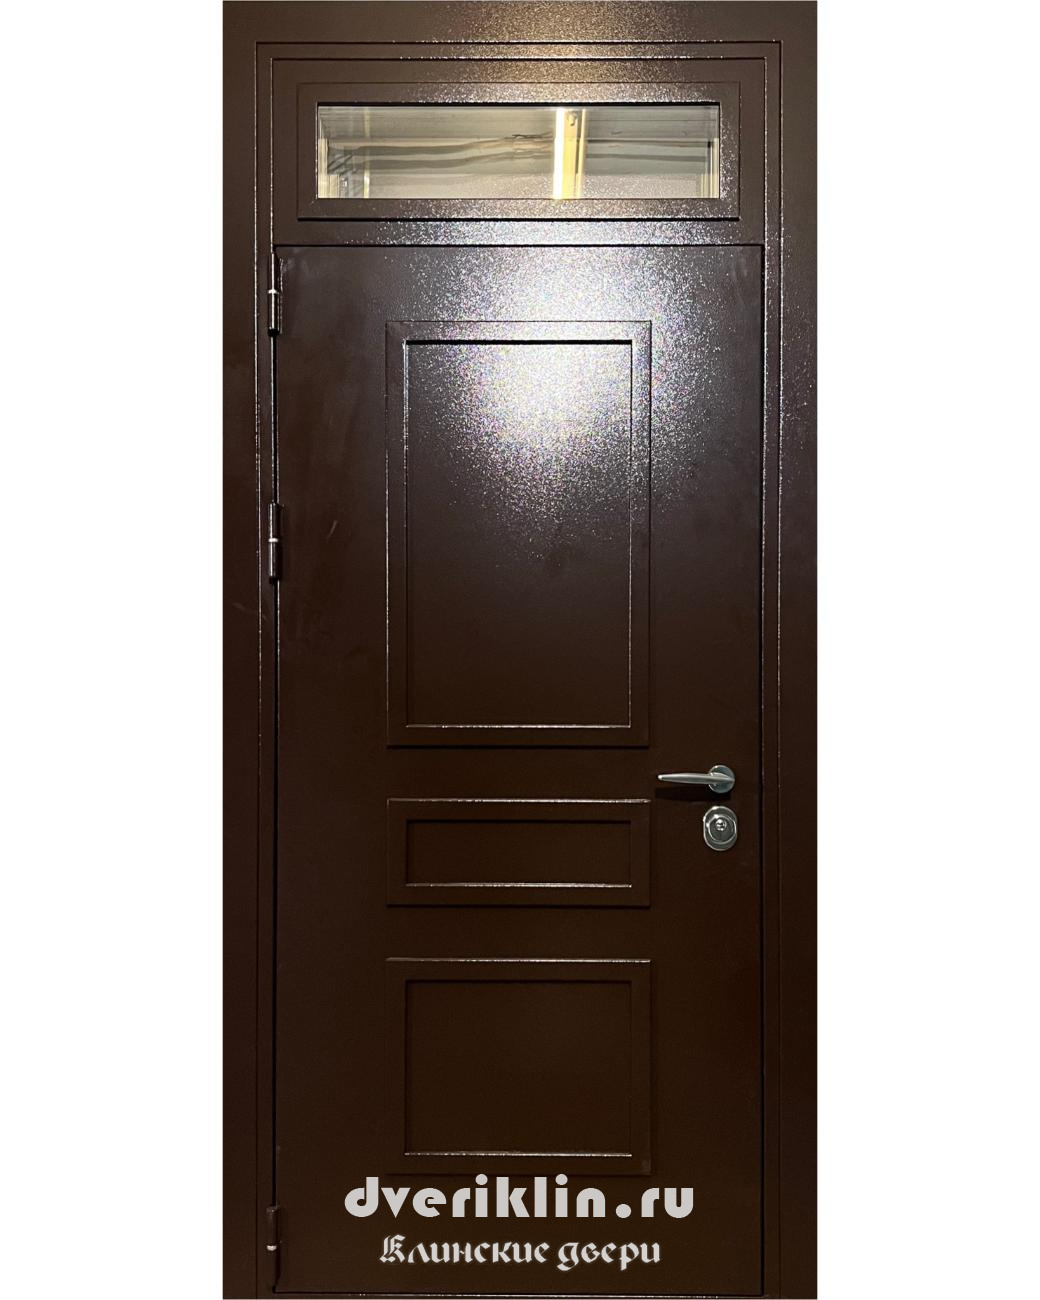 Дверь с рисунком на металле DPR-05 (С рисунком на металле)